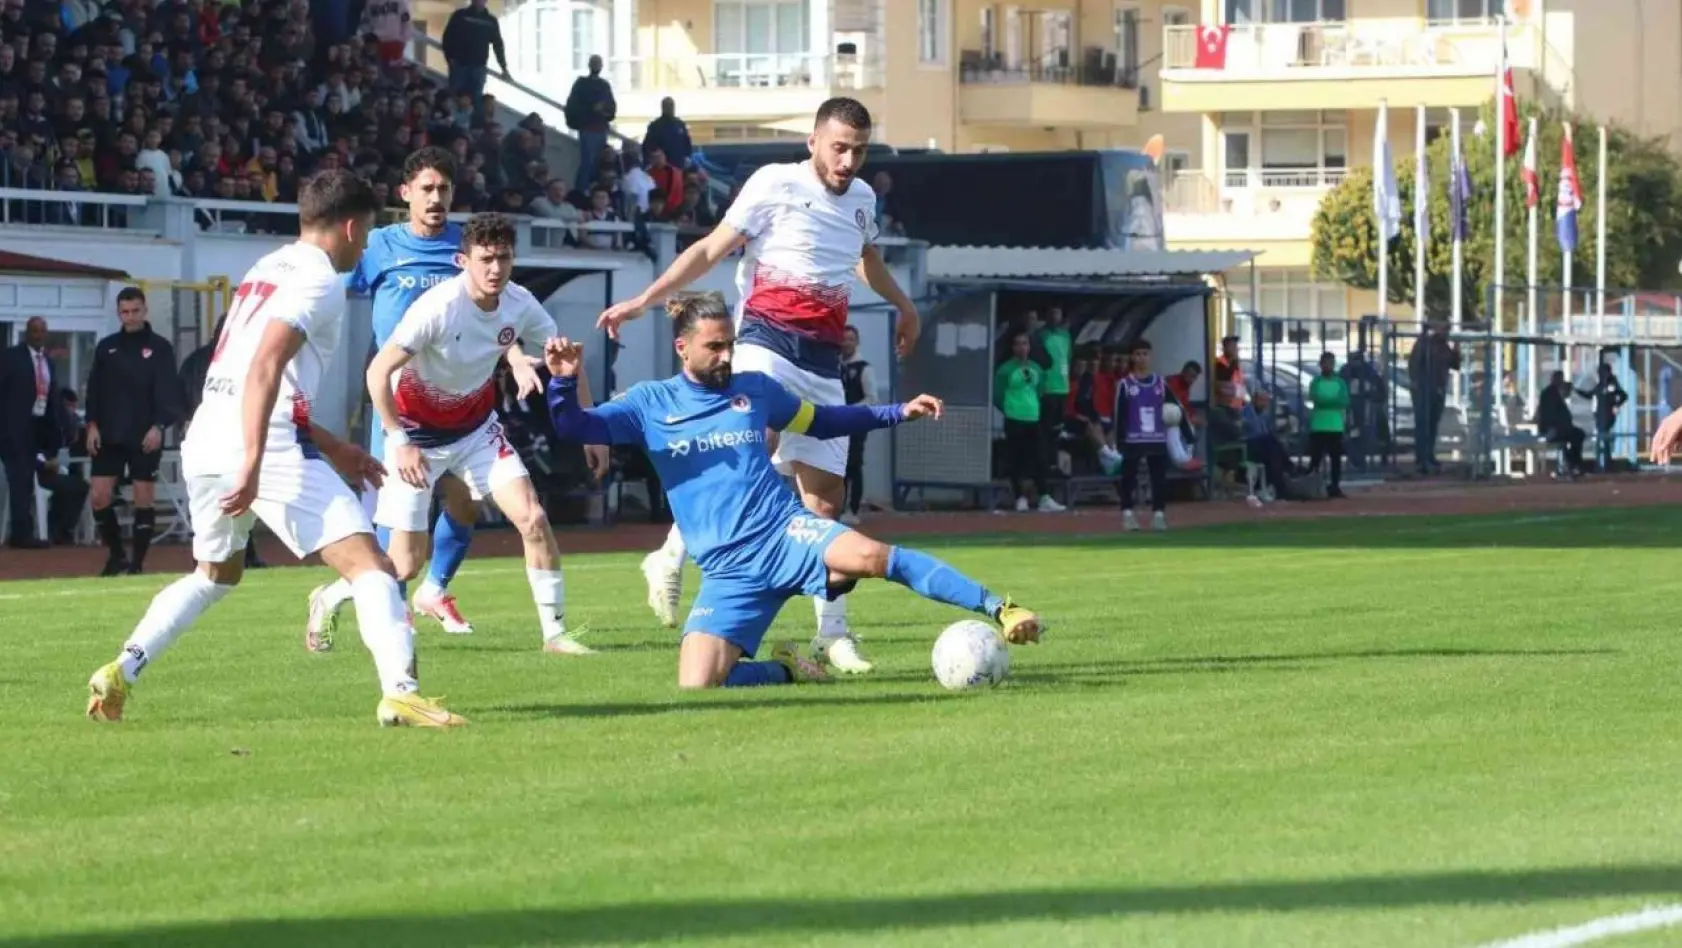 TFF 2. Lig: Fethiyespor: 1 - Zonguldak Kömürspor: 2